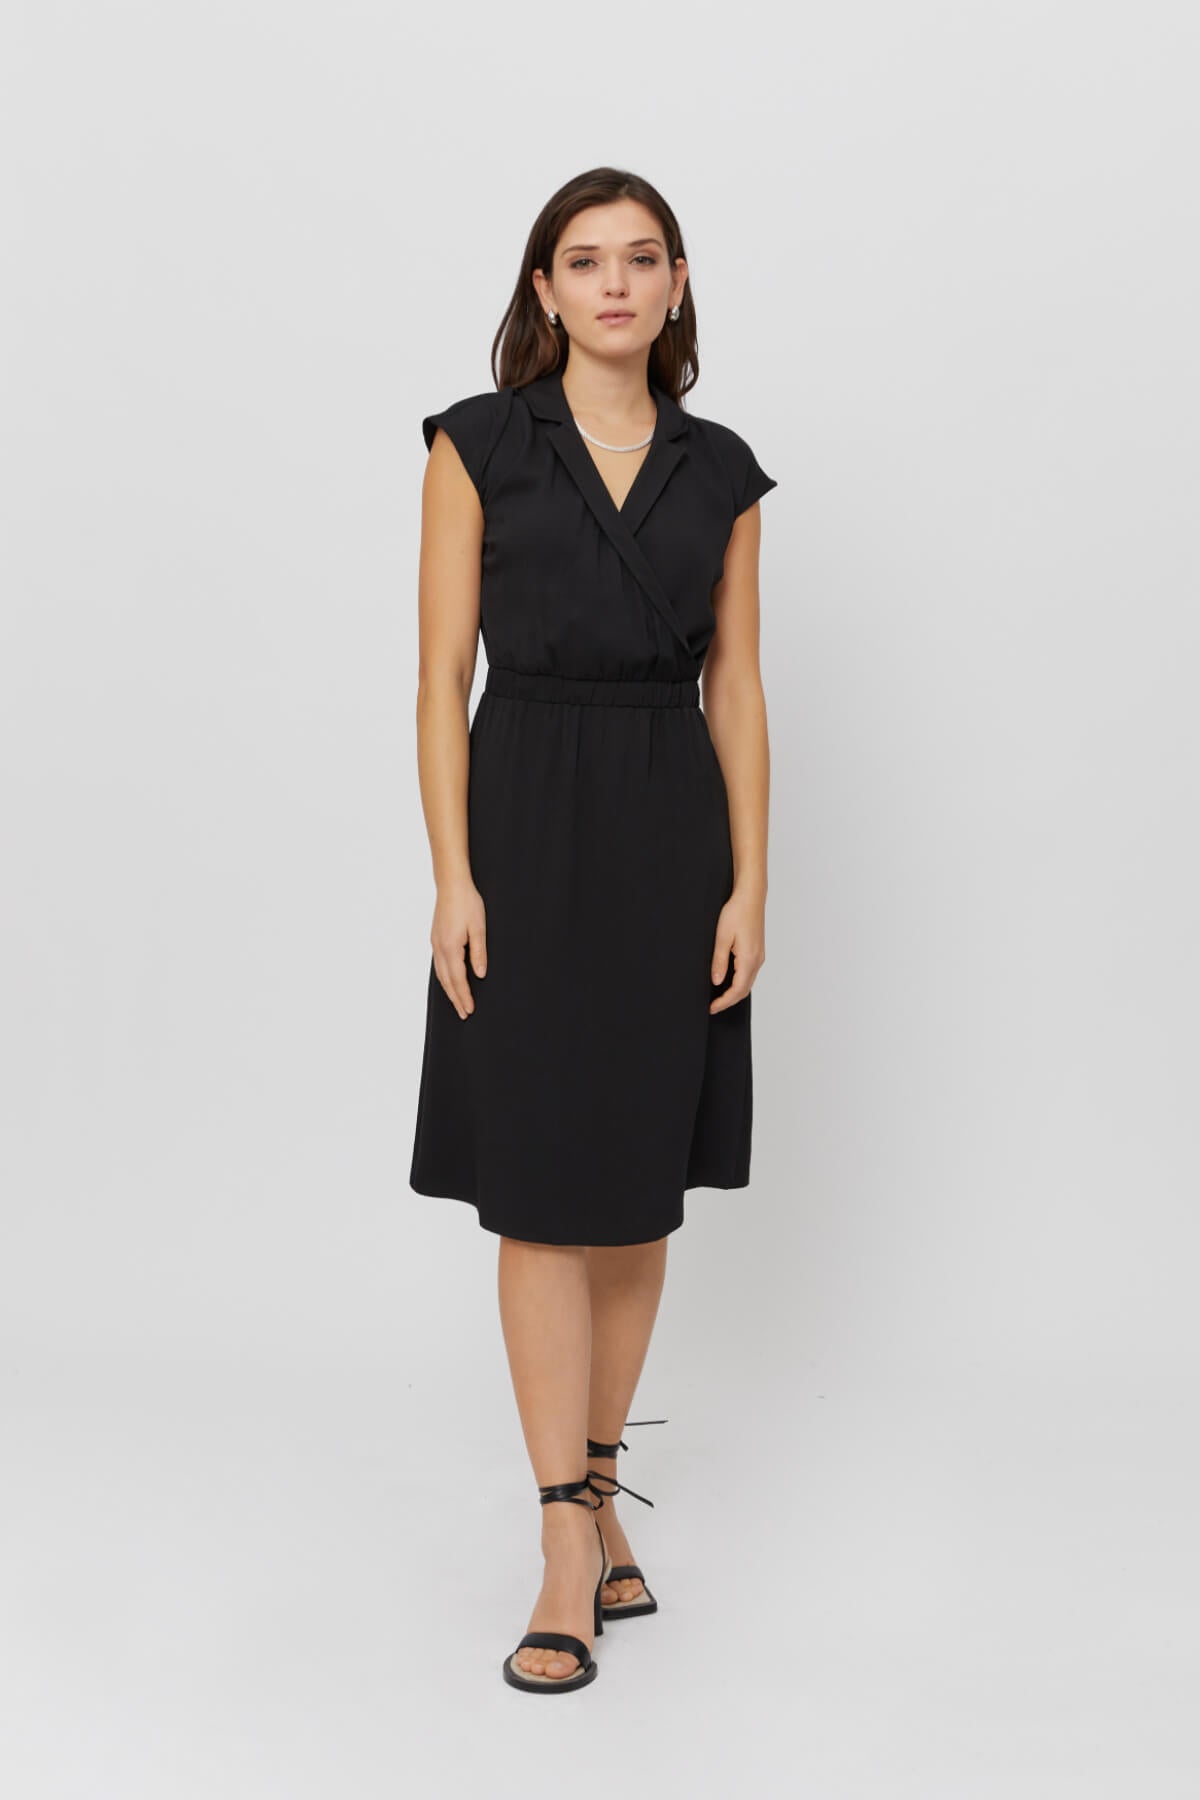 Black Formal Dress LILIT · Elegant Evening Dress With V neck · Office & Cocktail Dress - AYANI